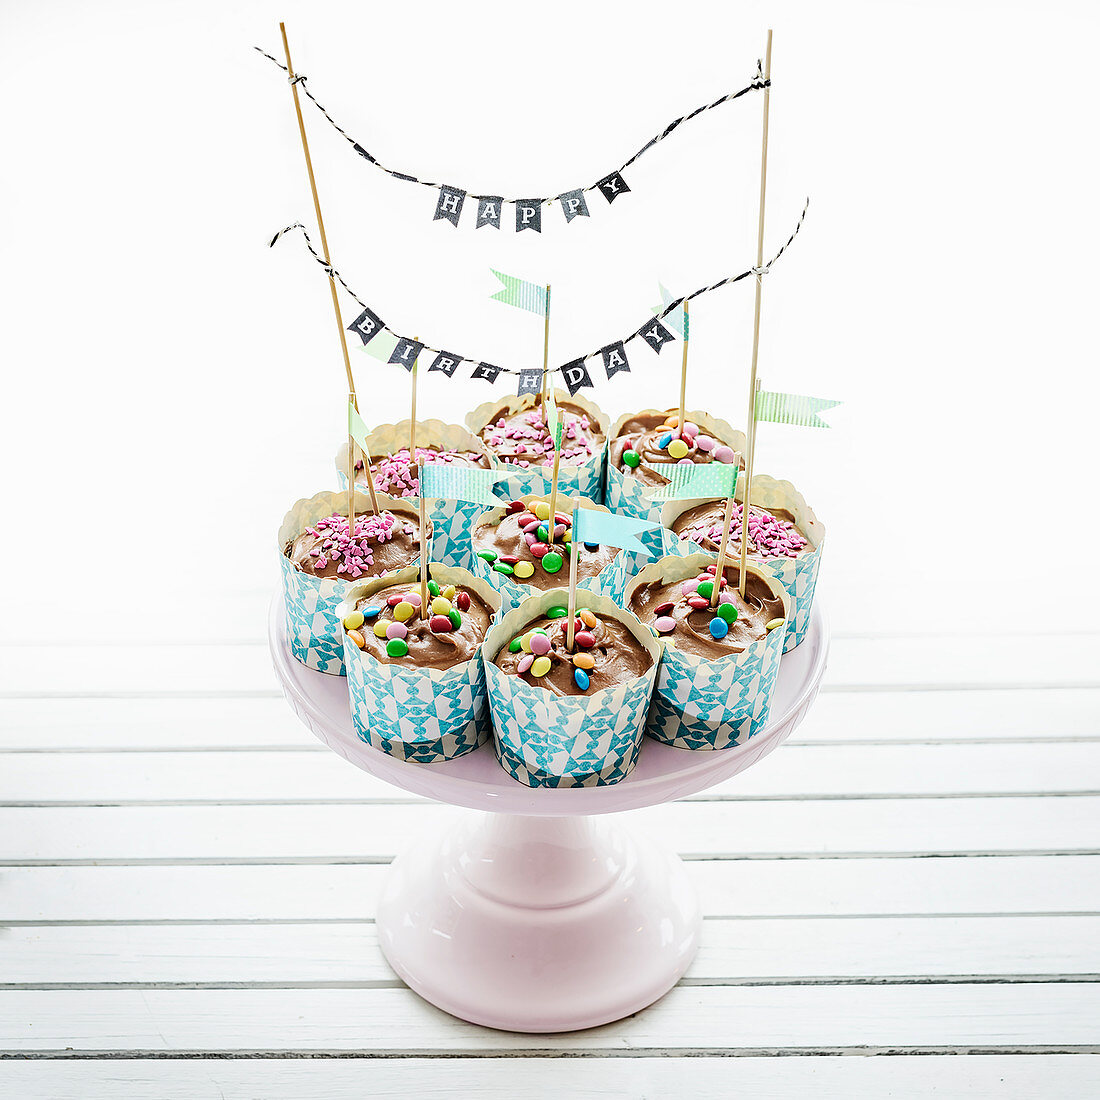 Hübsch dekorierte Cupcakes zum Geburtstag